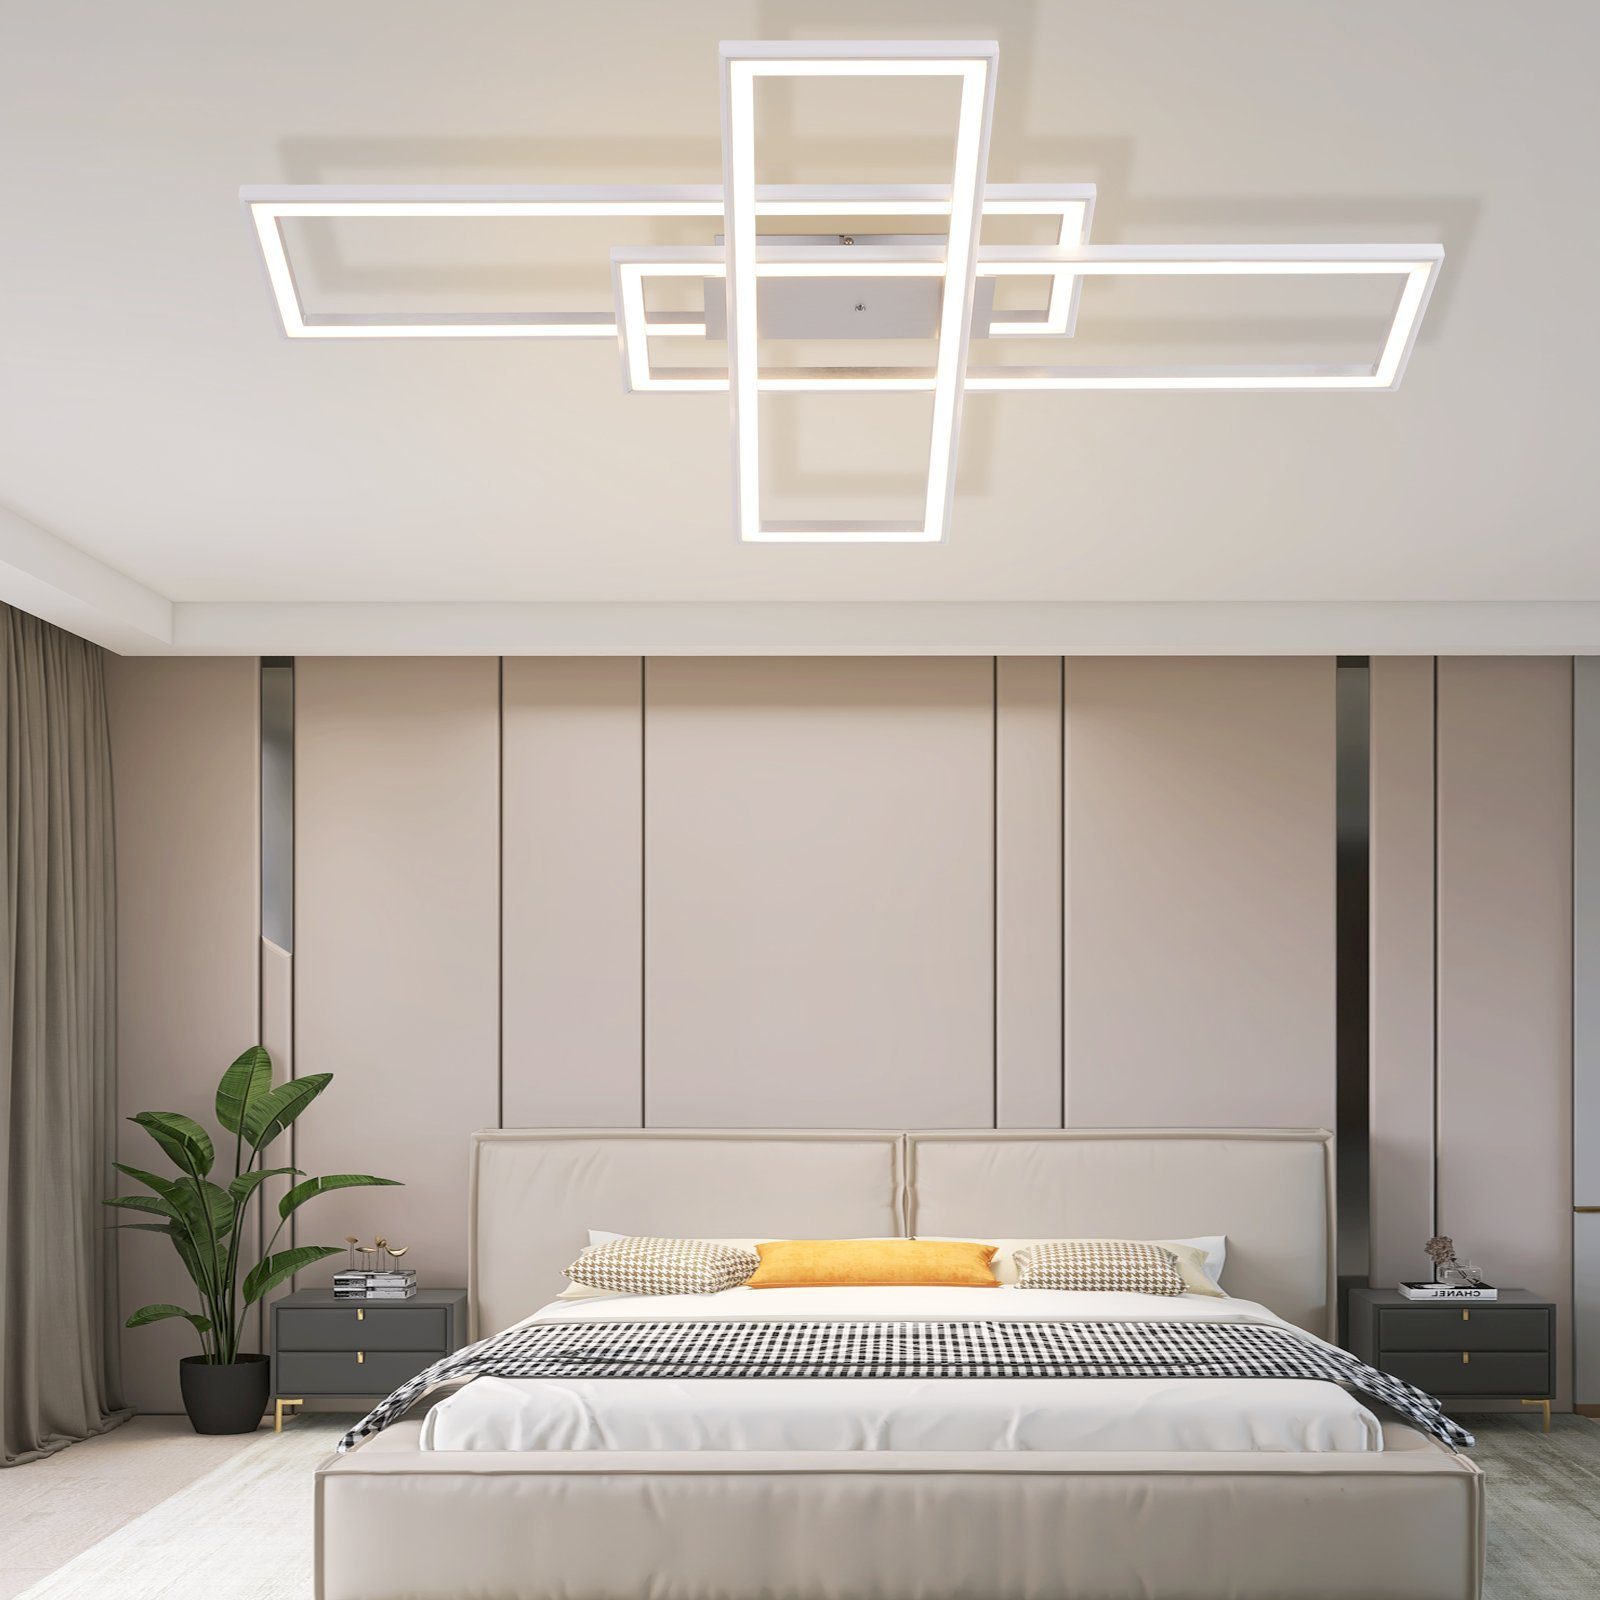 fest Schlafzimmerlampe mit RGB, 50W Deckenleuchte RGB, Dimmbar integriert, LED ZMH LED Fernbedienung